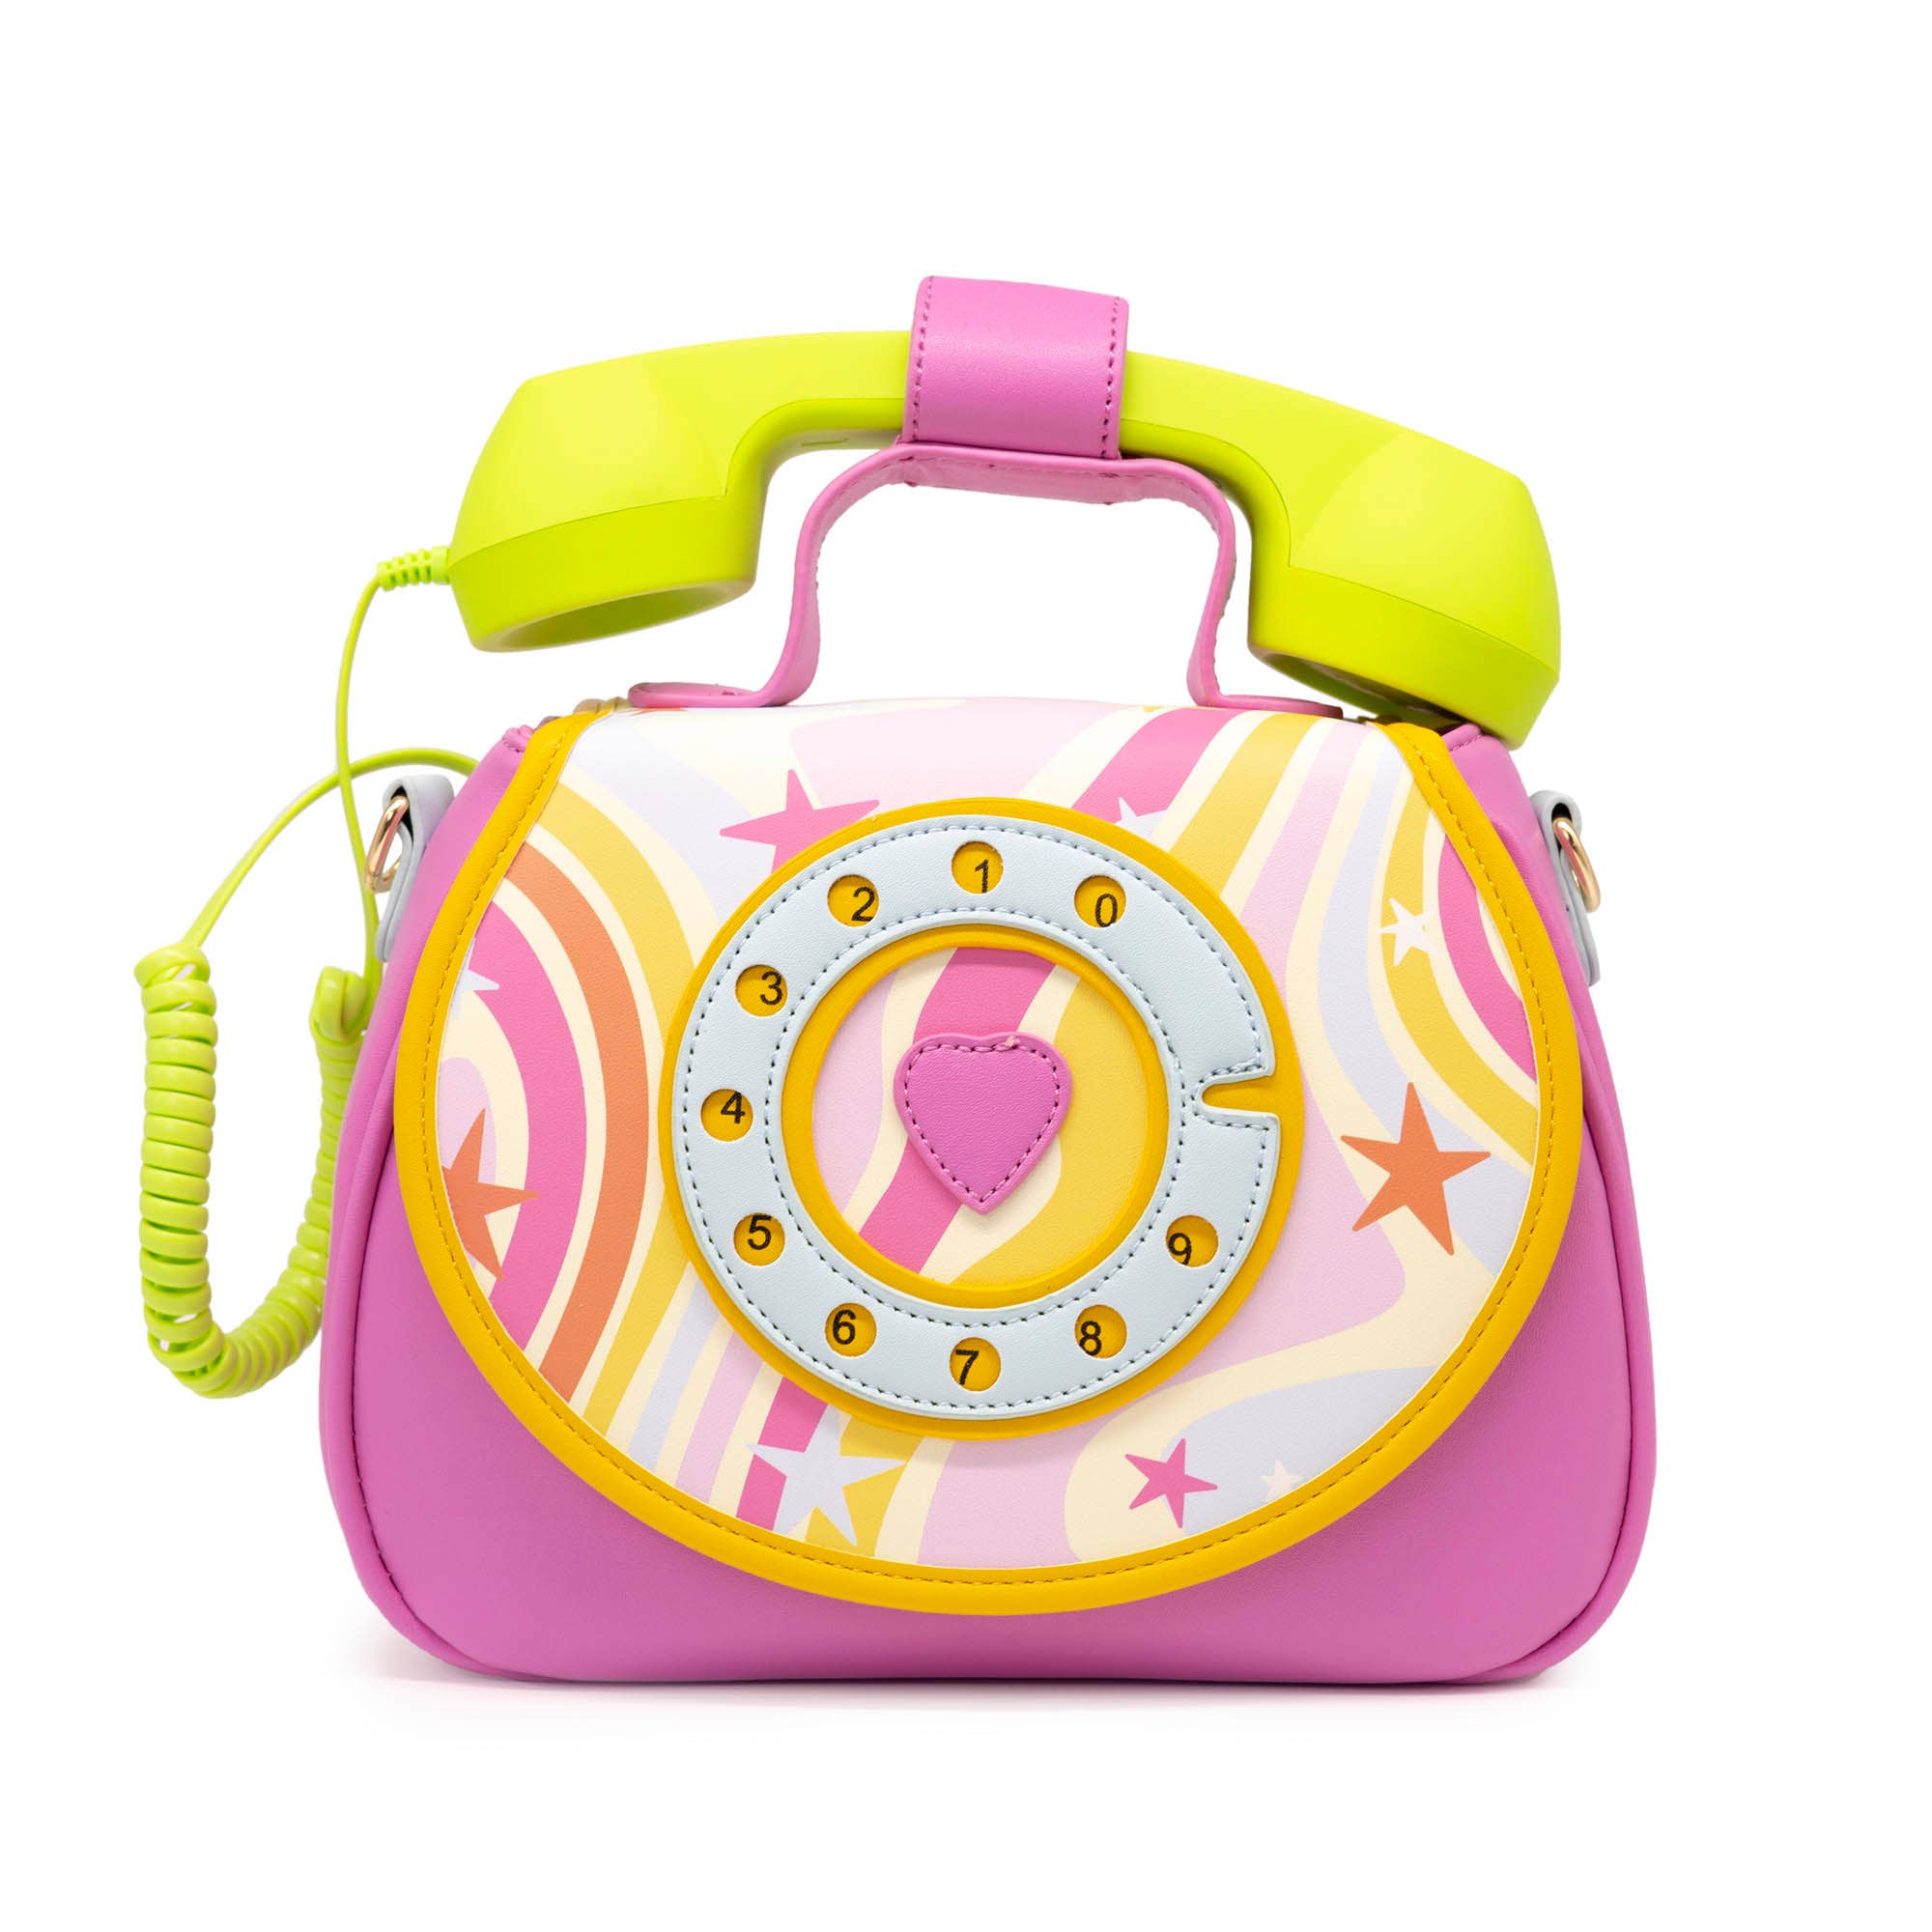 Ring Ring Phone Convertible Handbag | Retro Vibes